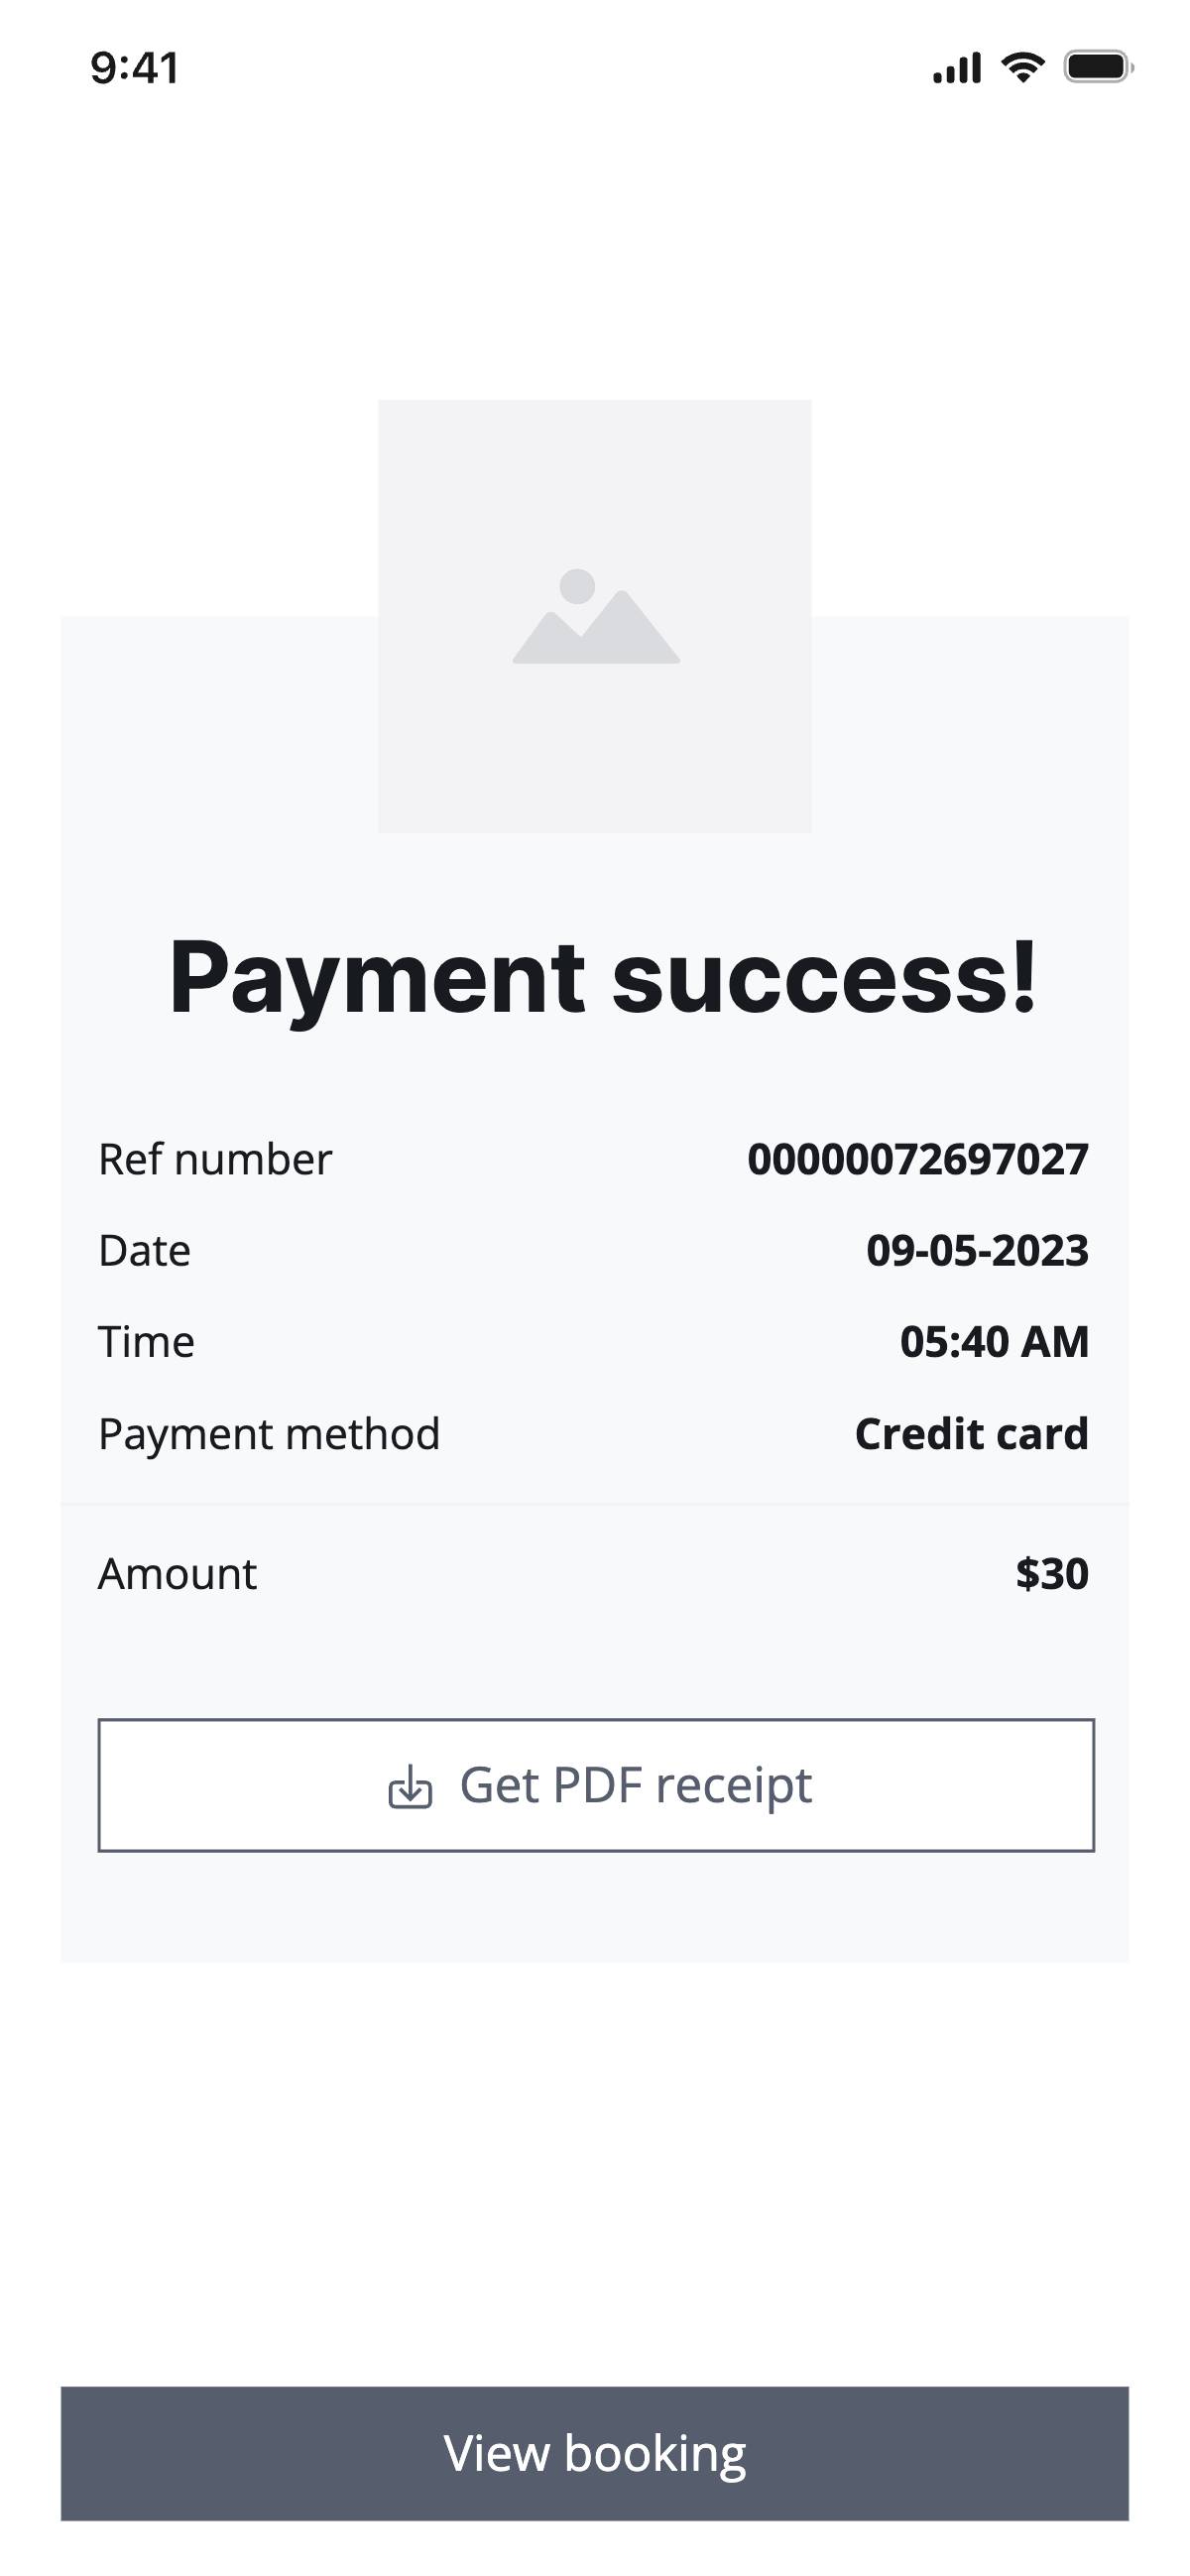 Checkout - Payment success